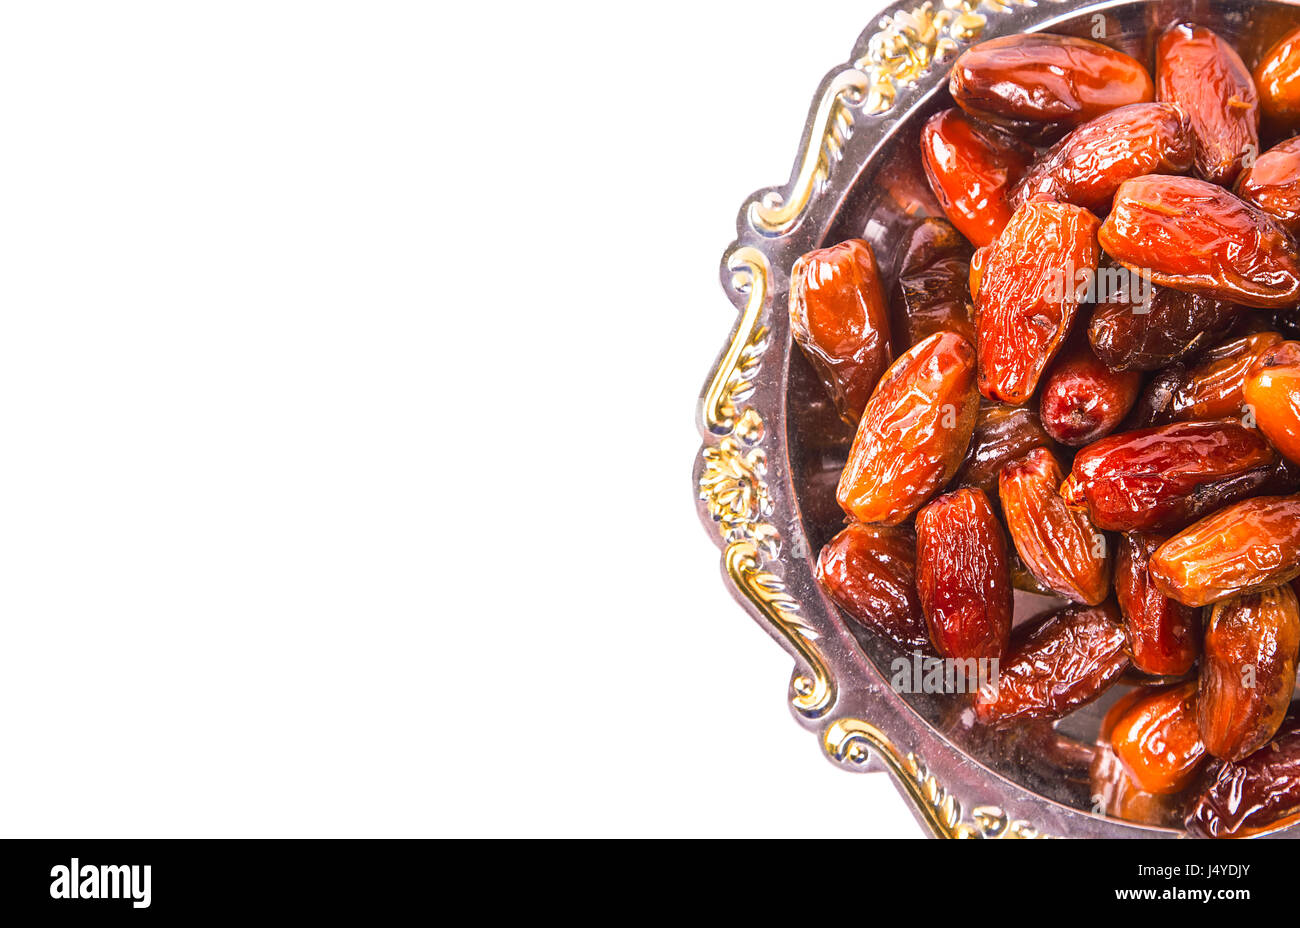 Schöne Termine Obst auf einem silbernen Tablett isoliert auf weißem Hintergrund. Das muslimische Opferfest des Heiligen Monats Ramadan Kareem. Stockfoto